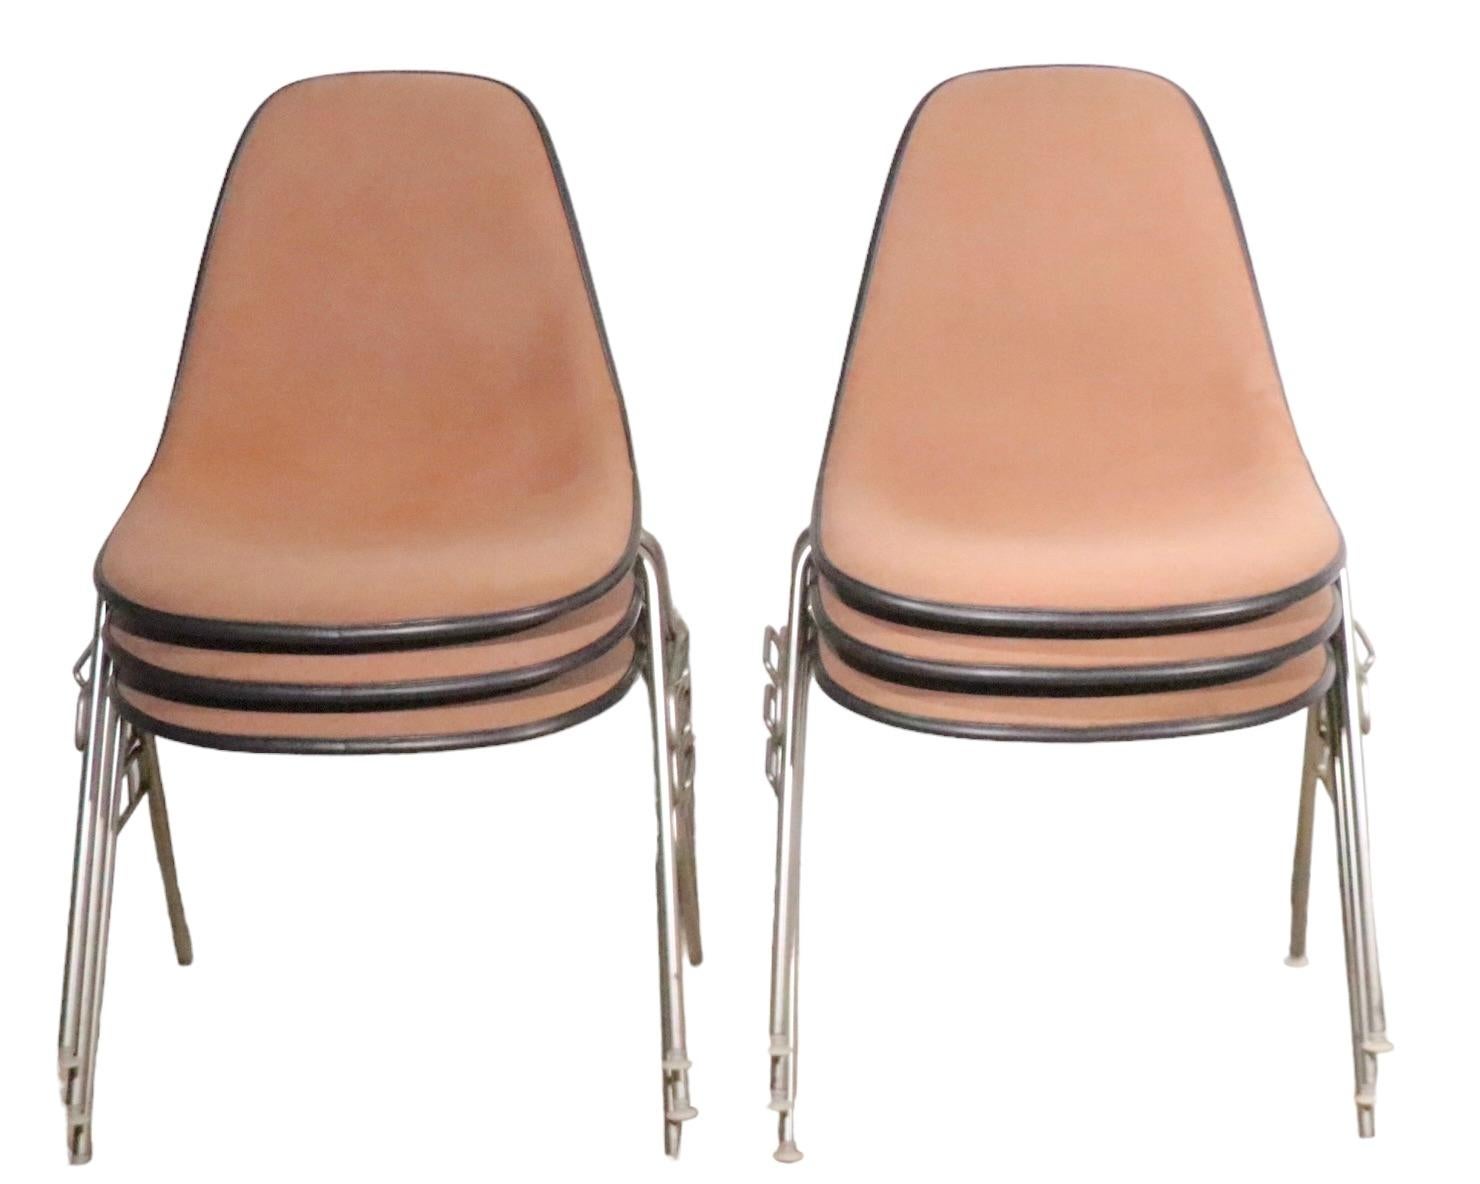 Satz von sechs stapelbaren DSS-Stühlen, entworfen von Eames für Herman Miller, mit beige/lehmfarbener Tweed-Polsterung,   dunkelgraue Fiberglasschalen und Metallbeine. Alle sind in sehr gutem Originalzustand und zeigen nur leichte kosmetische